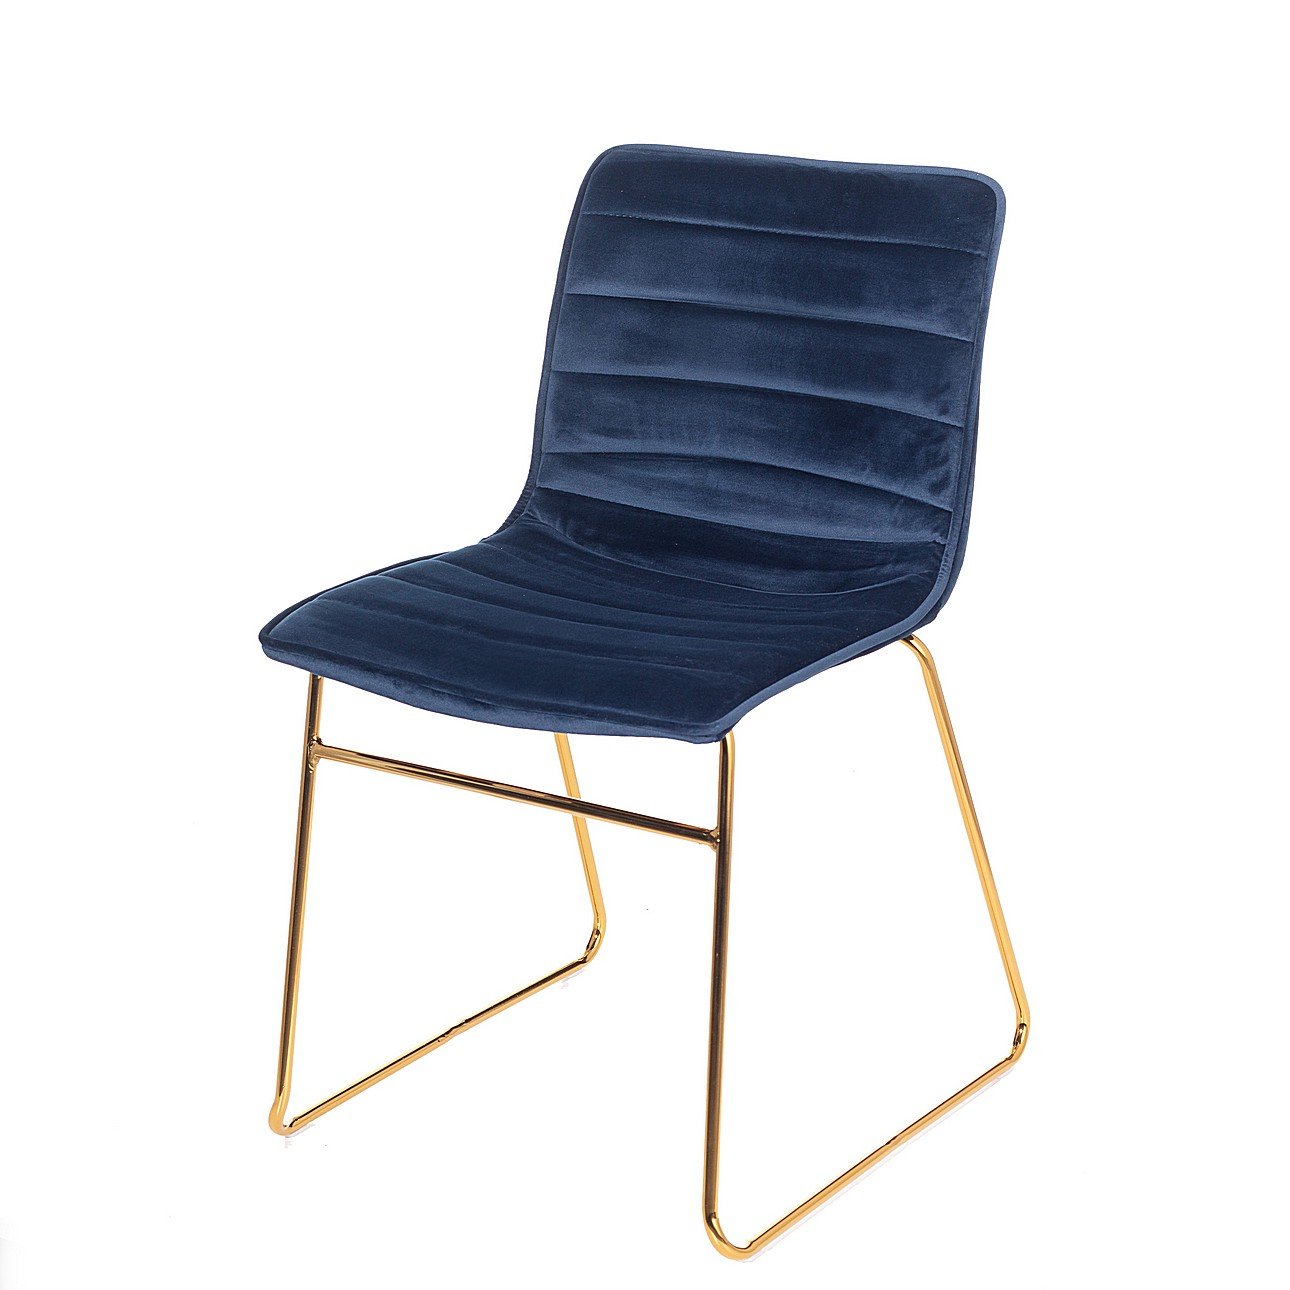 Dekoria Čalouněná židle Milo Navy, 45 x 53,5 x 80cm